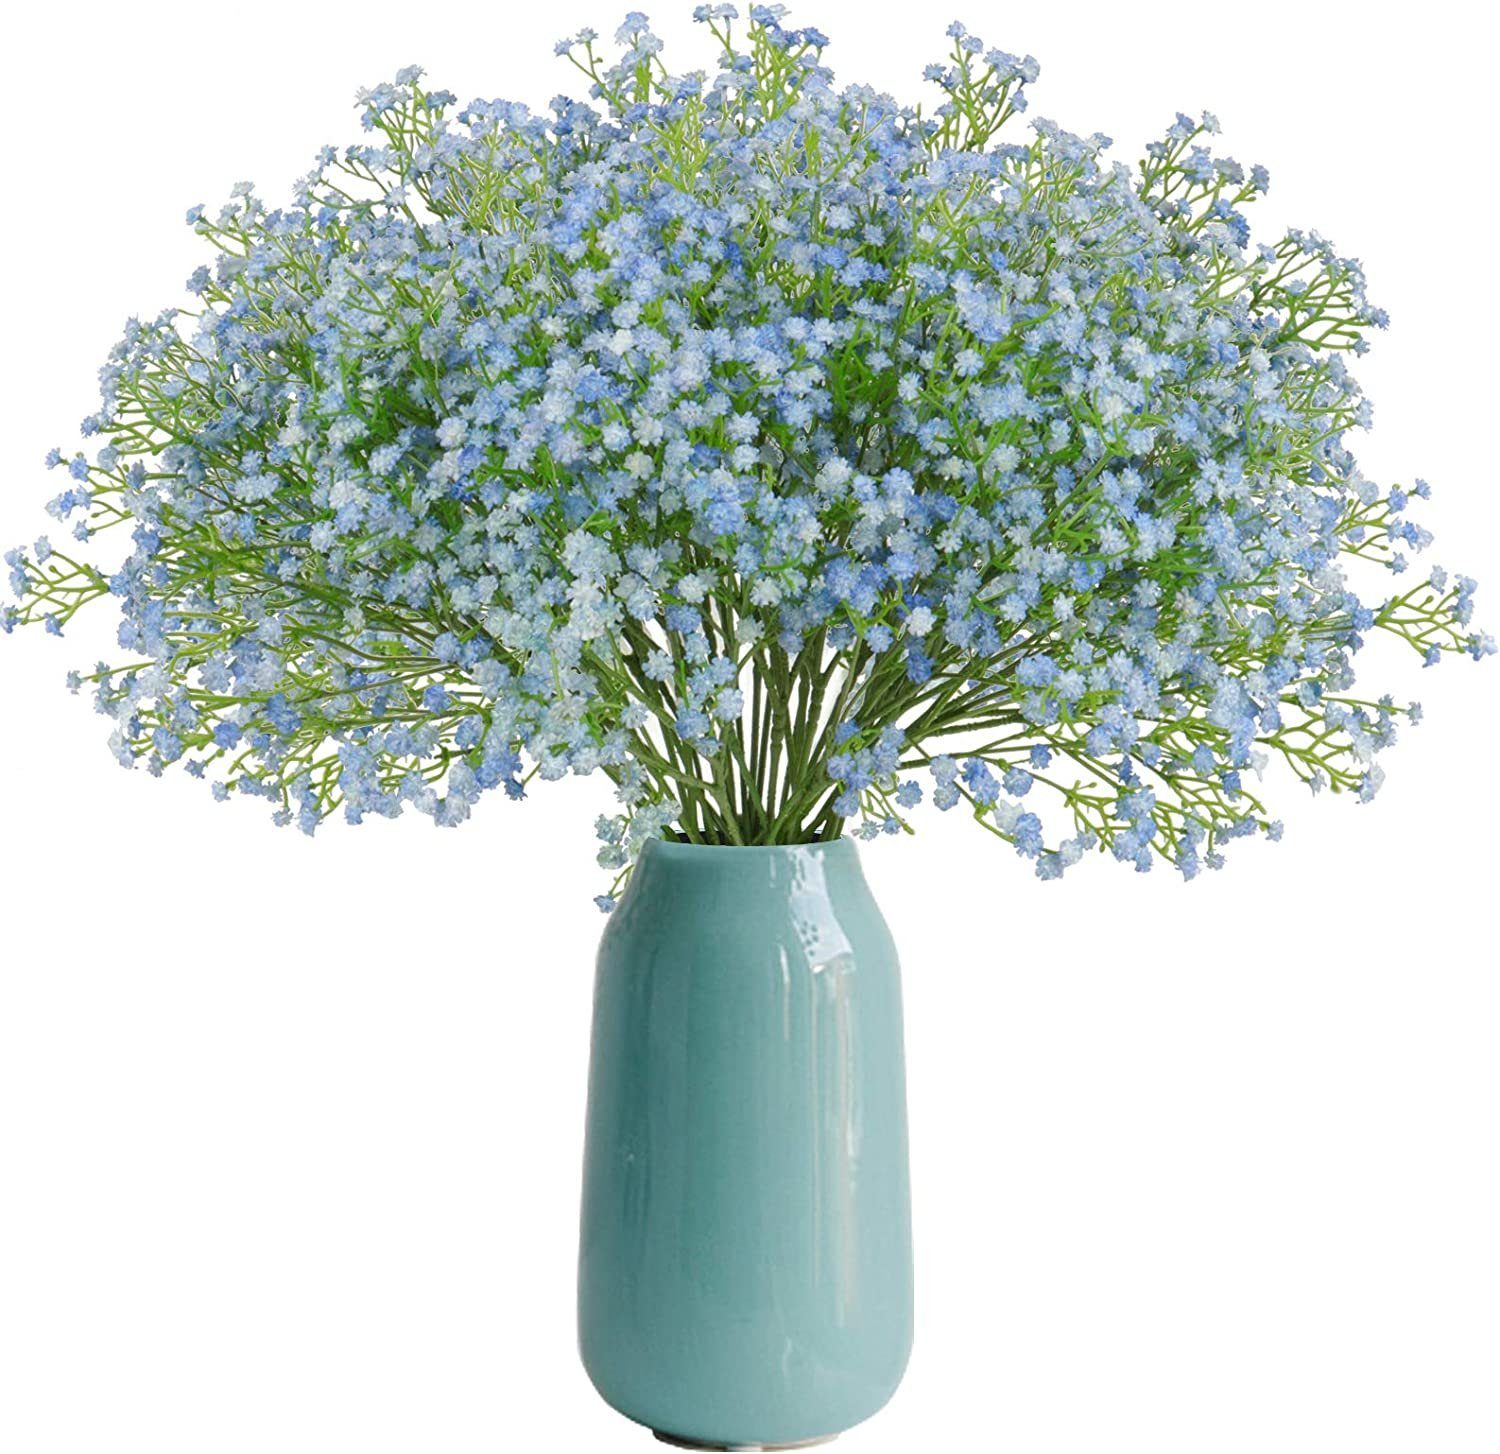 Kunstblume Gypsophila Künstliche Blumen, 10 Stück Gypsophila Kunstblumen, Mutoy, Höhe 52 cm, Blumensträuße für Wohnzimmer Schlafzimmer Hochzeit Tischdekoration Blau